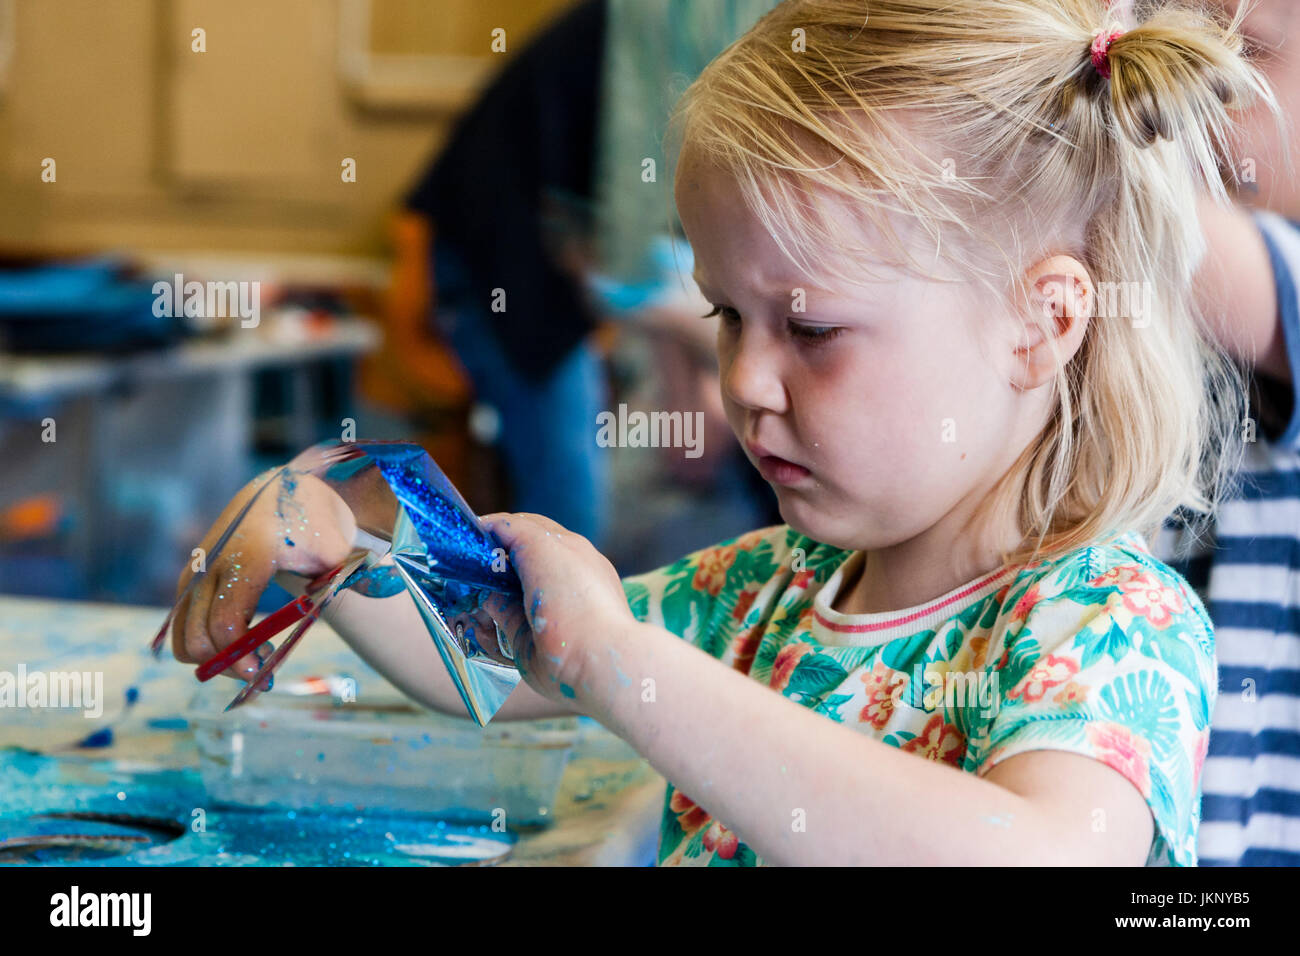 Portrait enfant blonde, fille, 5-6 ans, se concentrant très fort qu'elle tente d'utiliser des ciseaux pour couper un morceau de papier d'aluminium. Vue en gros plan, le bras et le visage. Participation à l'atelier d'art et d'artisanat. Banque D'Images